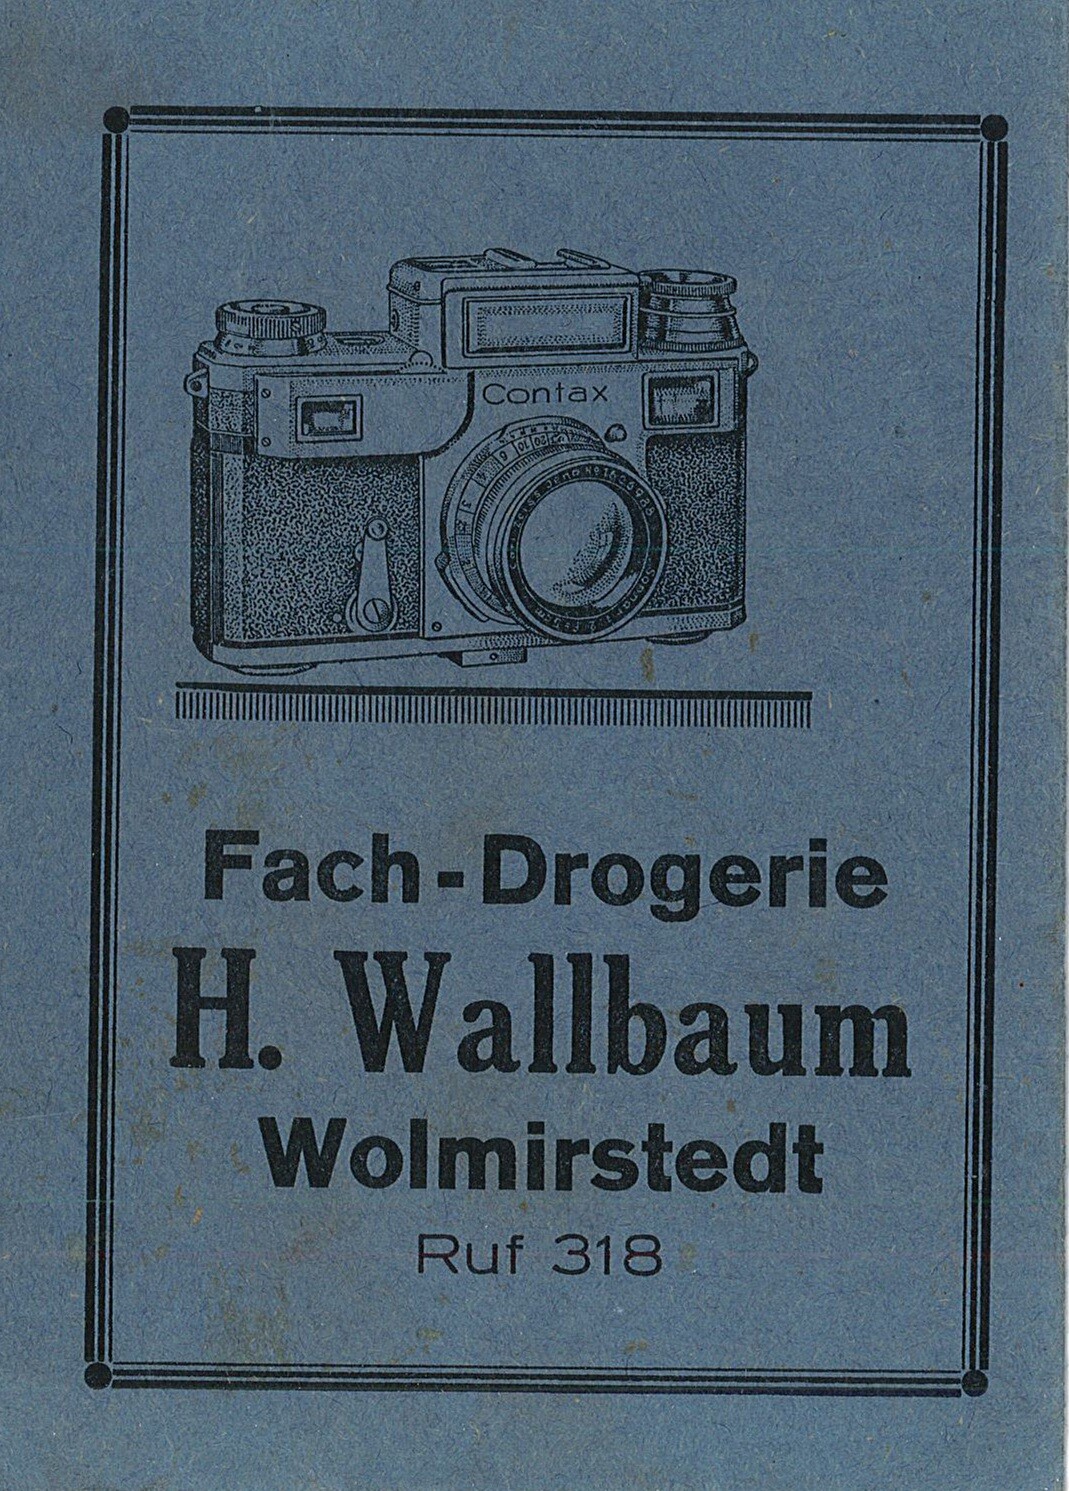 Fotohülle der Fachdrogerie Wallbaum, Wolmirstedt (Museum Wolmirstedt RR-F)